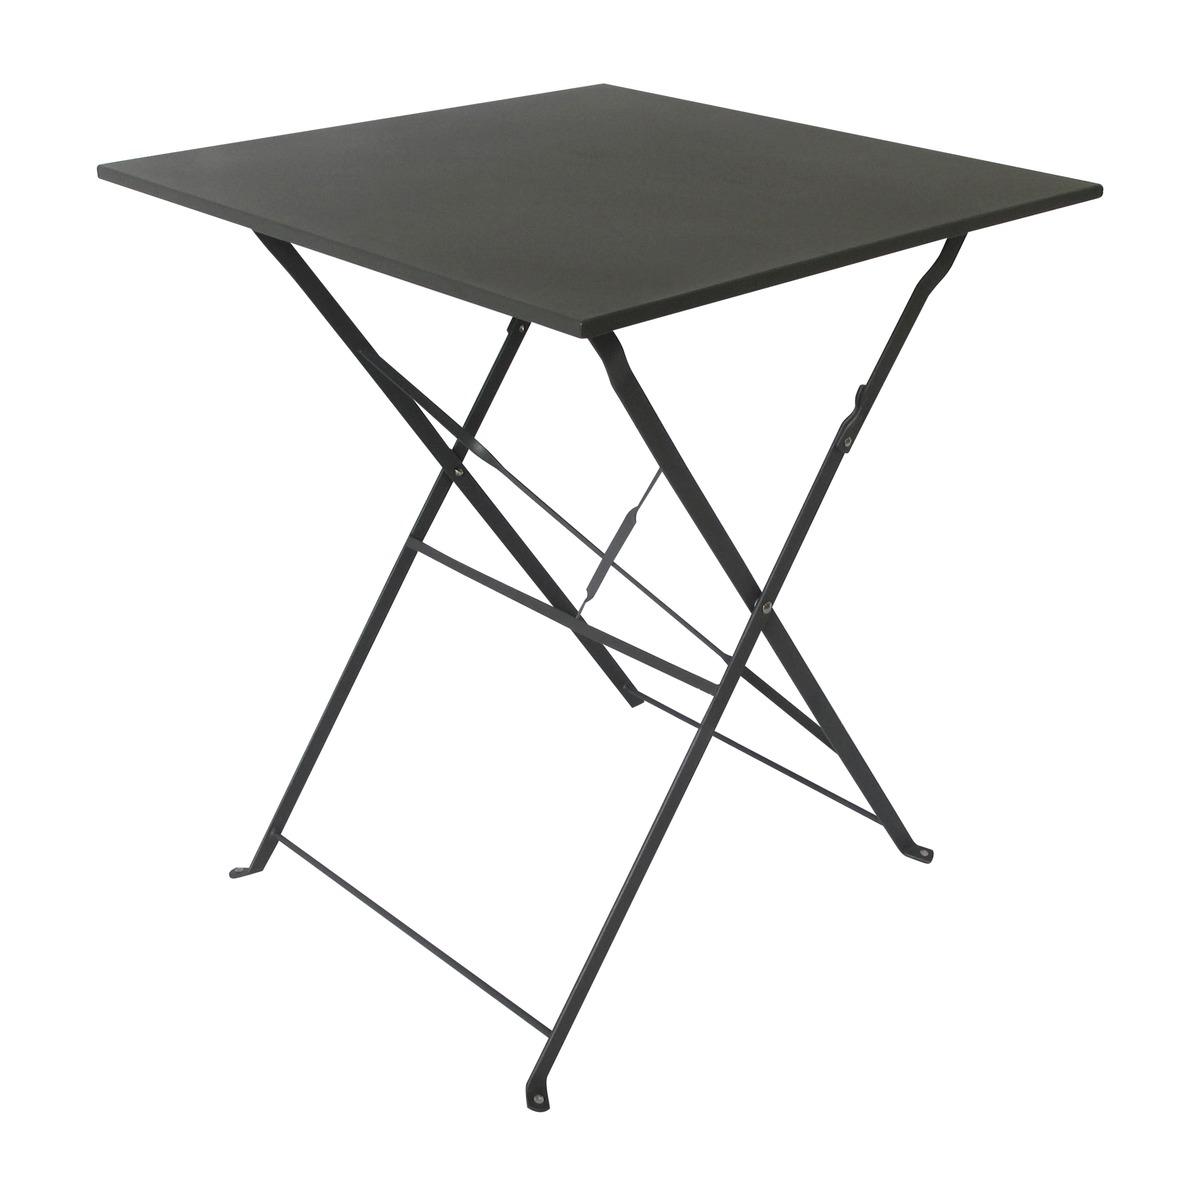 Table Diana pliable - 60 x 60 x H 71 cm - gris